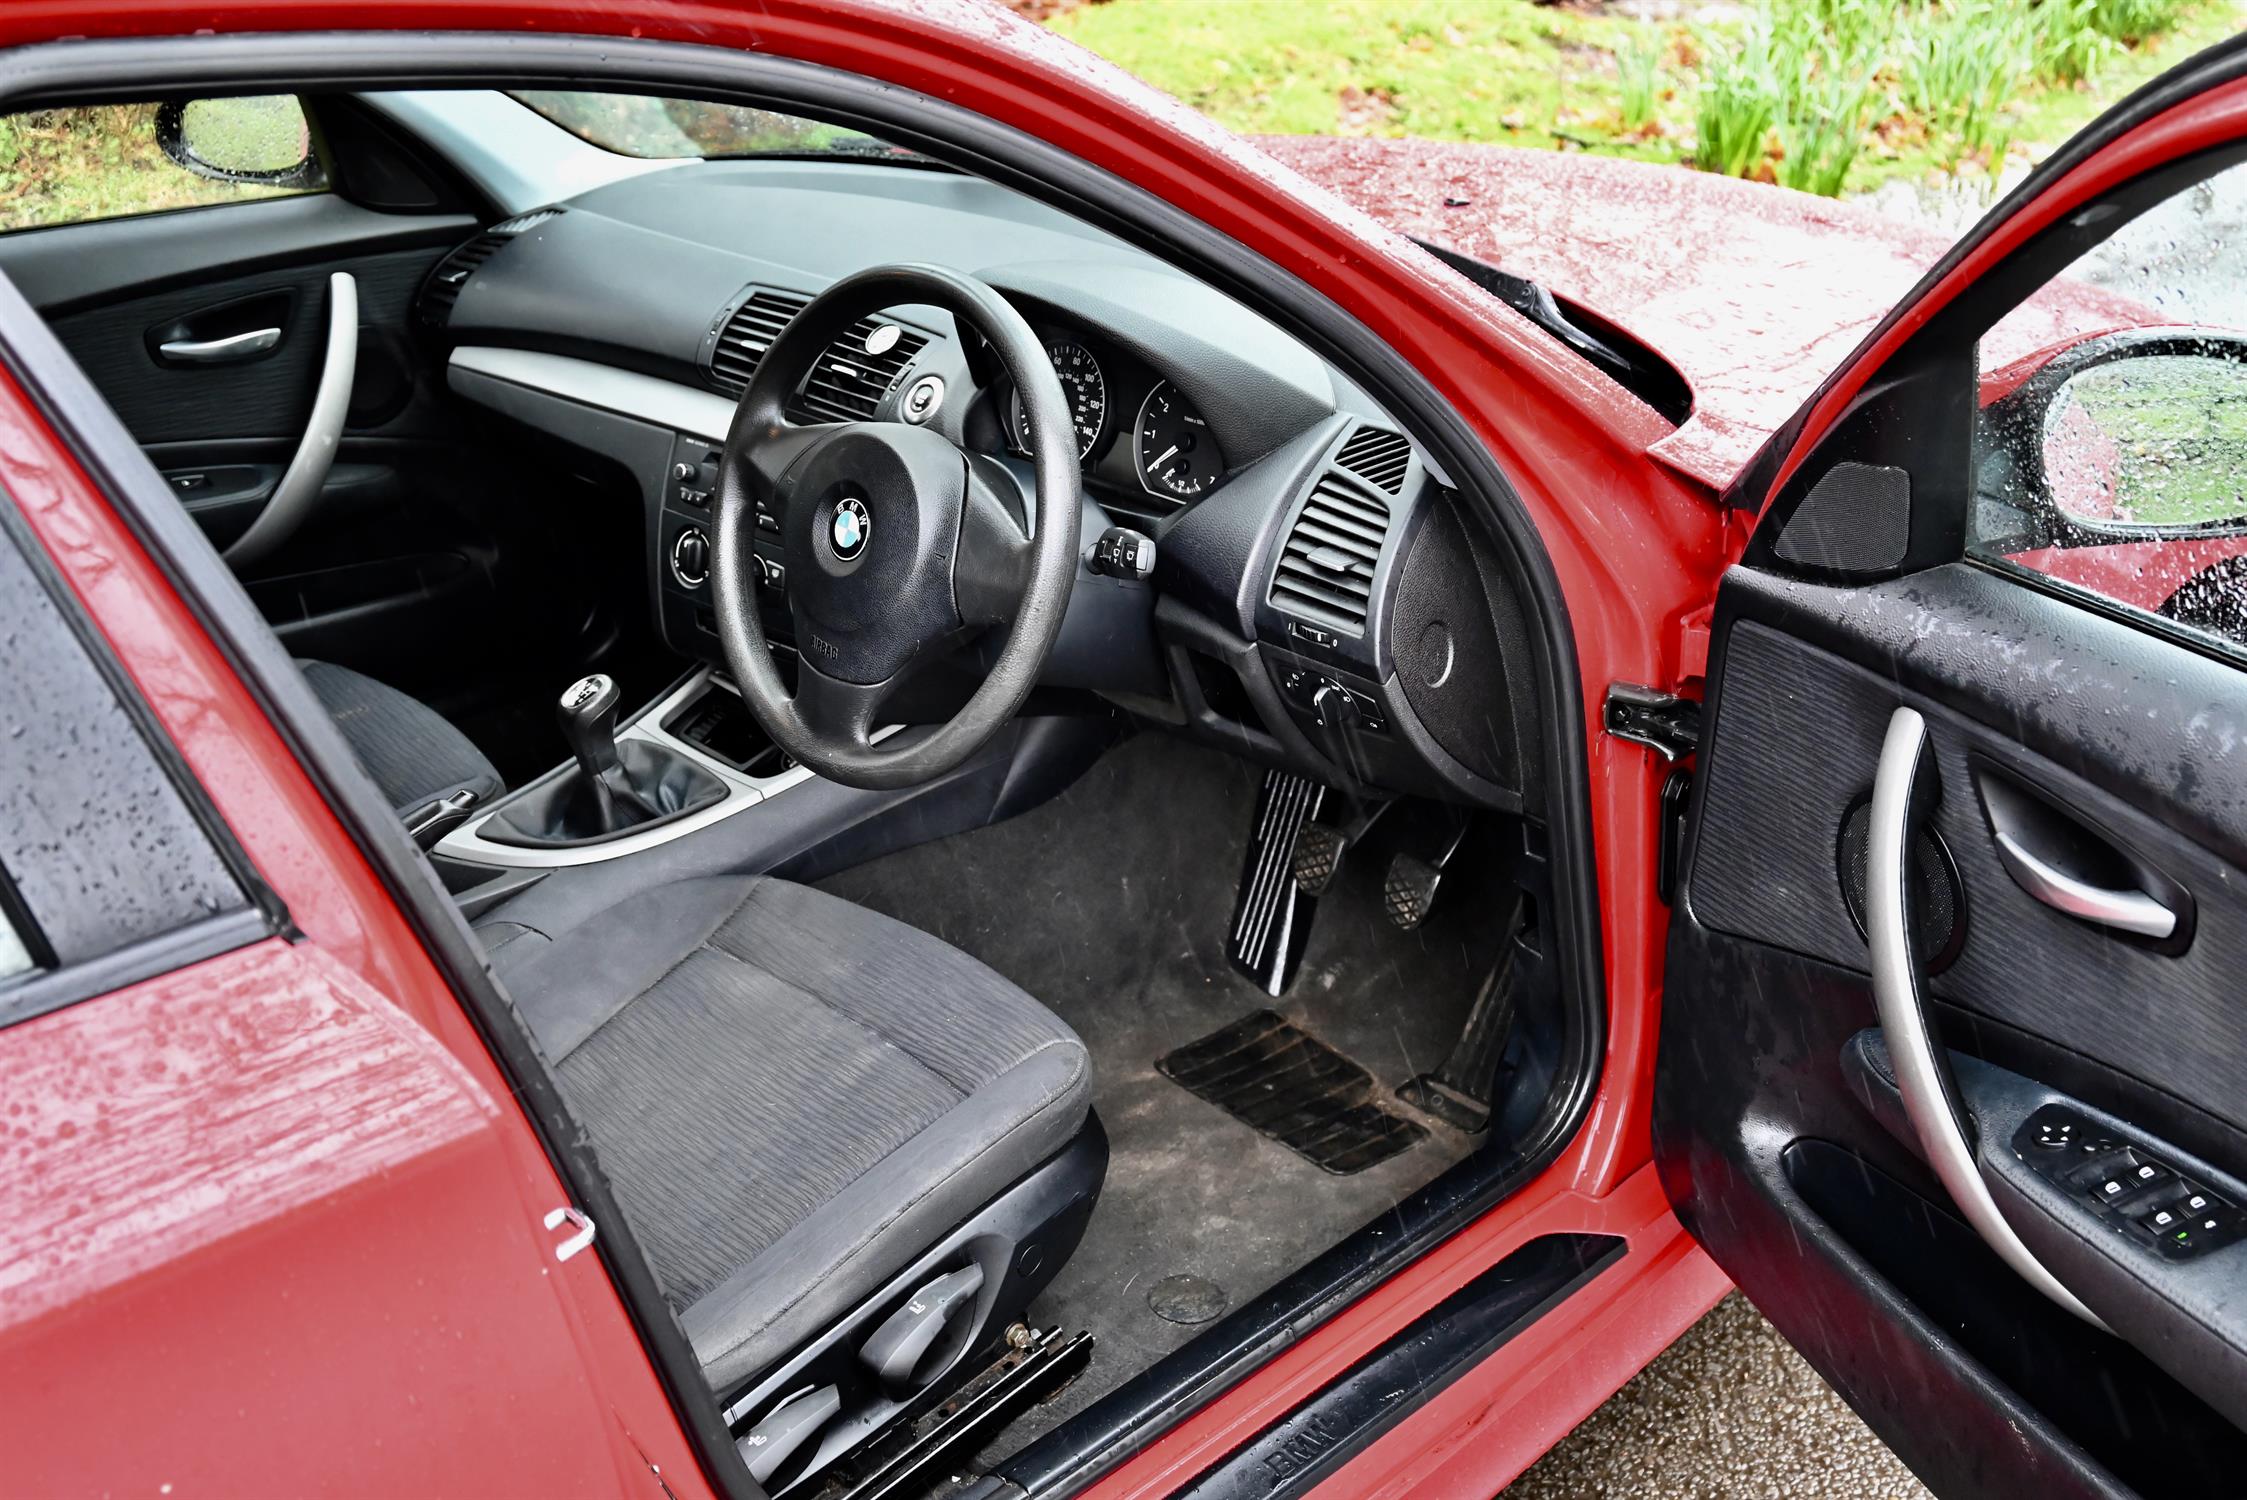 2007 BMW 116i 1597cc Petrol 5 Door Hatchback. Registration number: LD57 WNZ. Mileage: 142,600. - Image 2 of 12